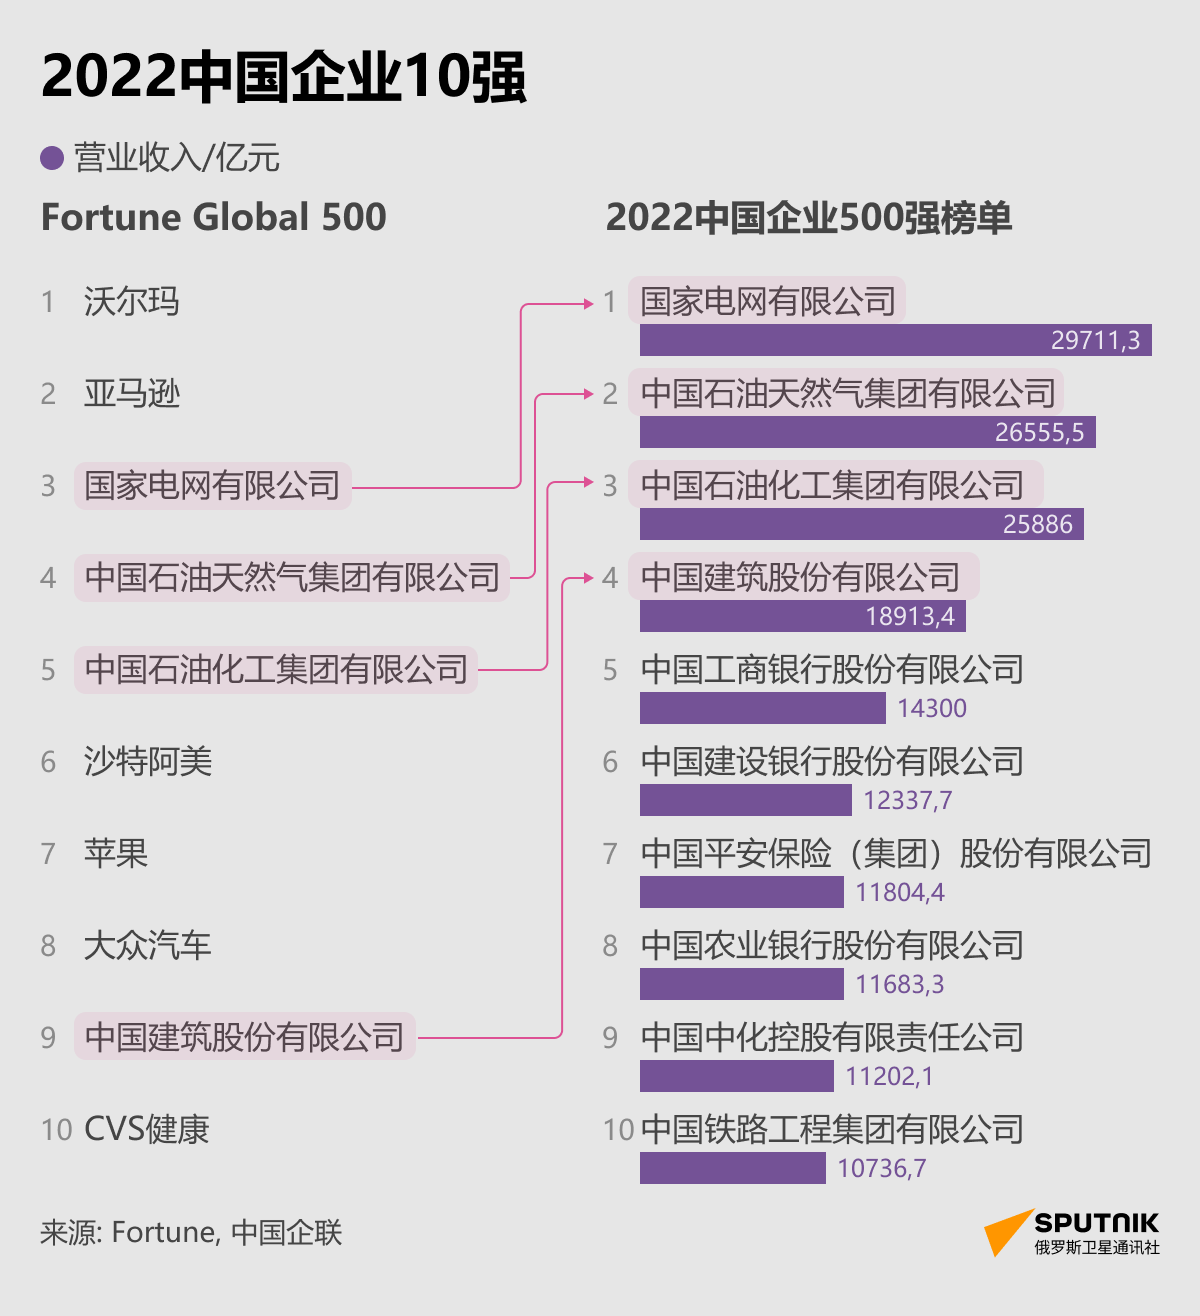 2022永利平台企业10强 - 永利官网卫星通讯社